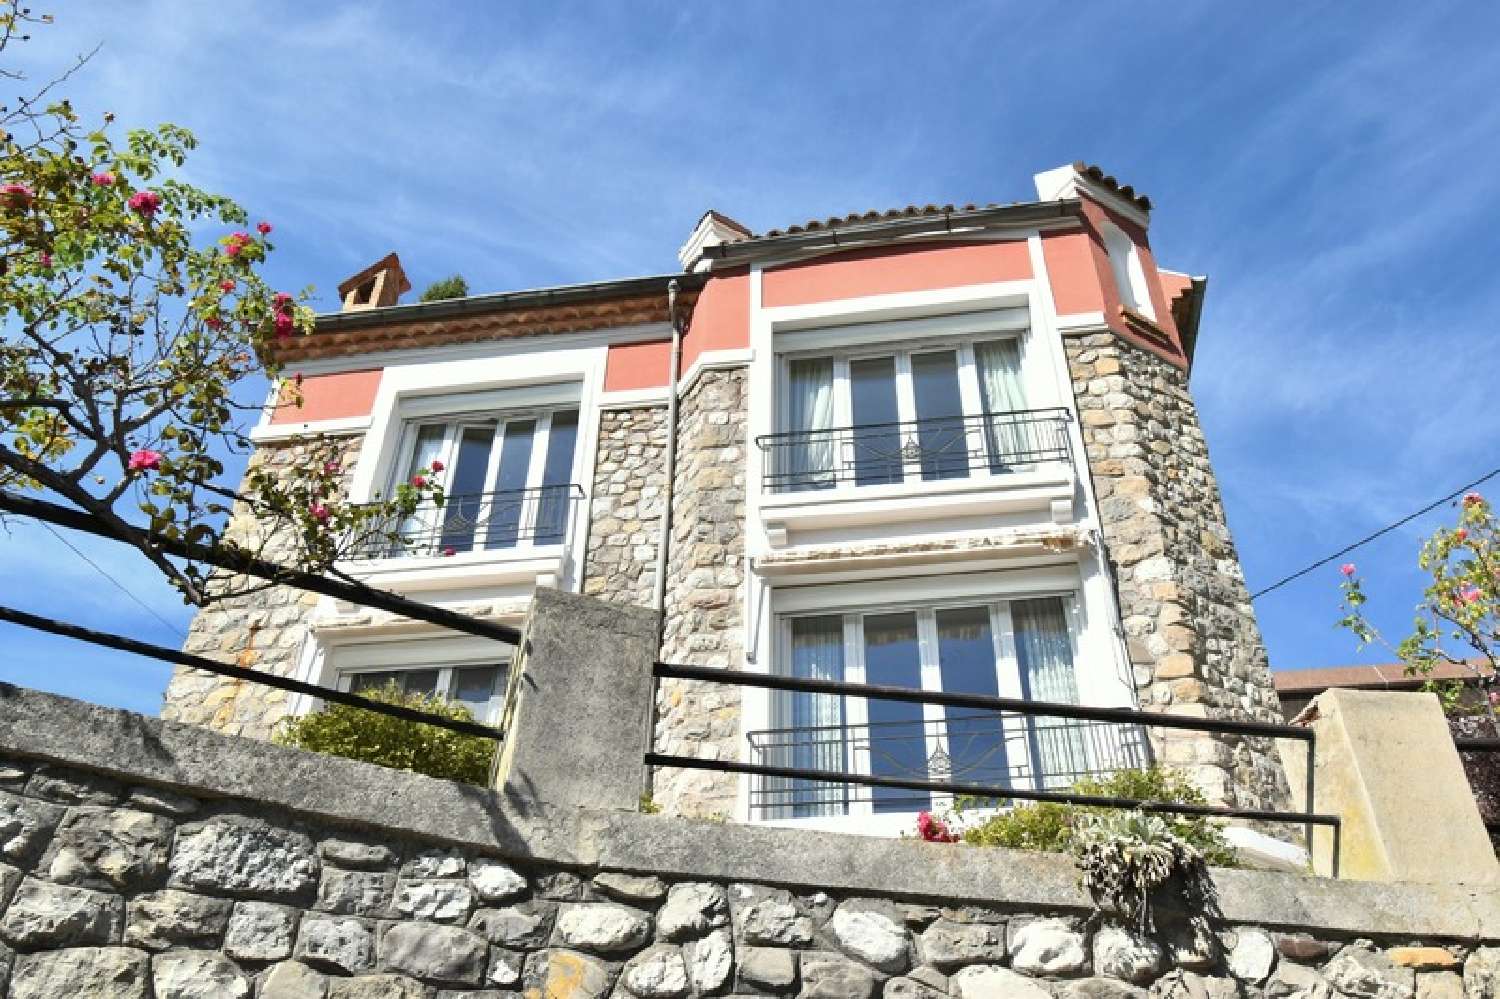  à vendre maison bourgeoise Digne-Les-Bains Alpes-de-Haute-Provence 1